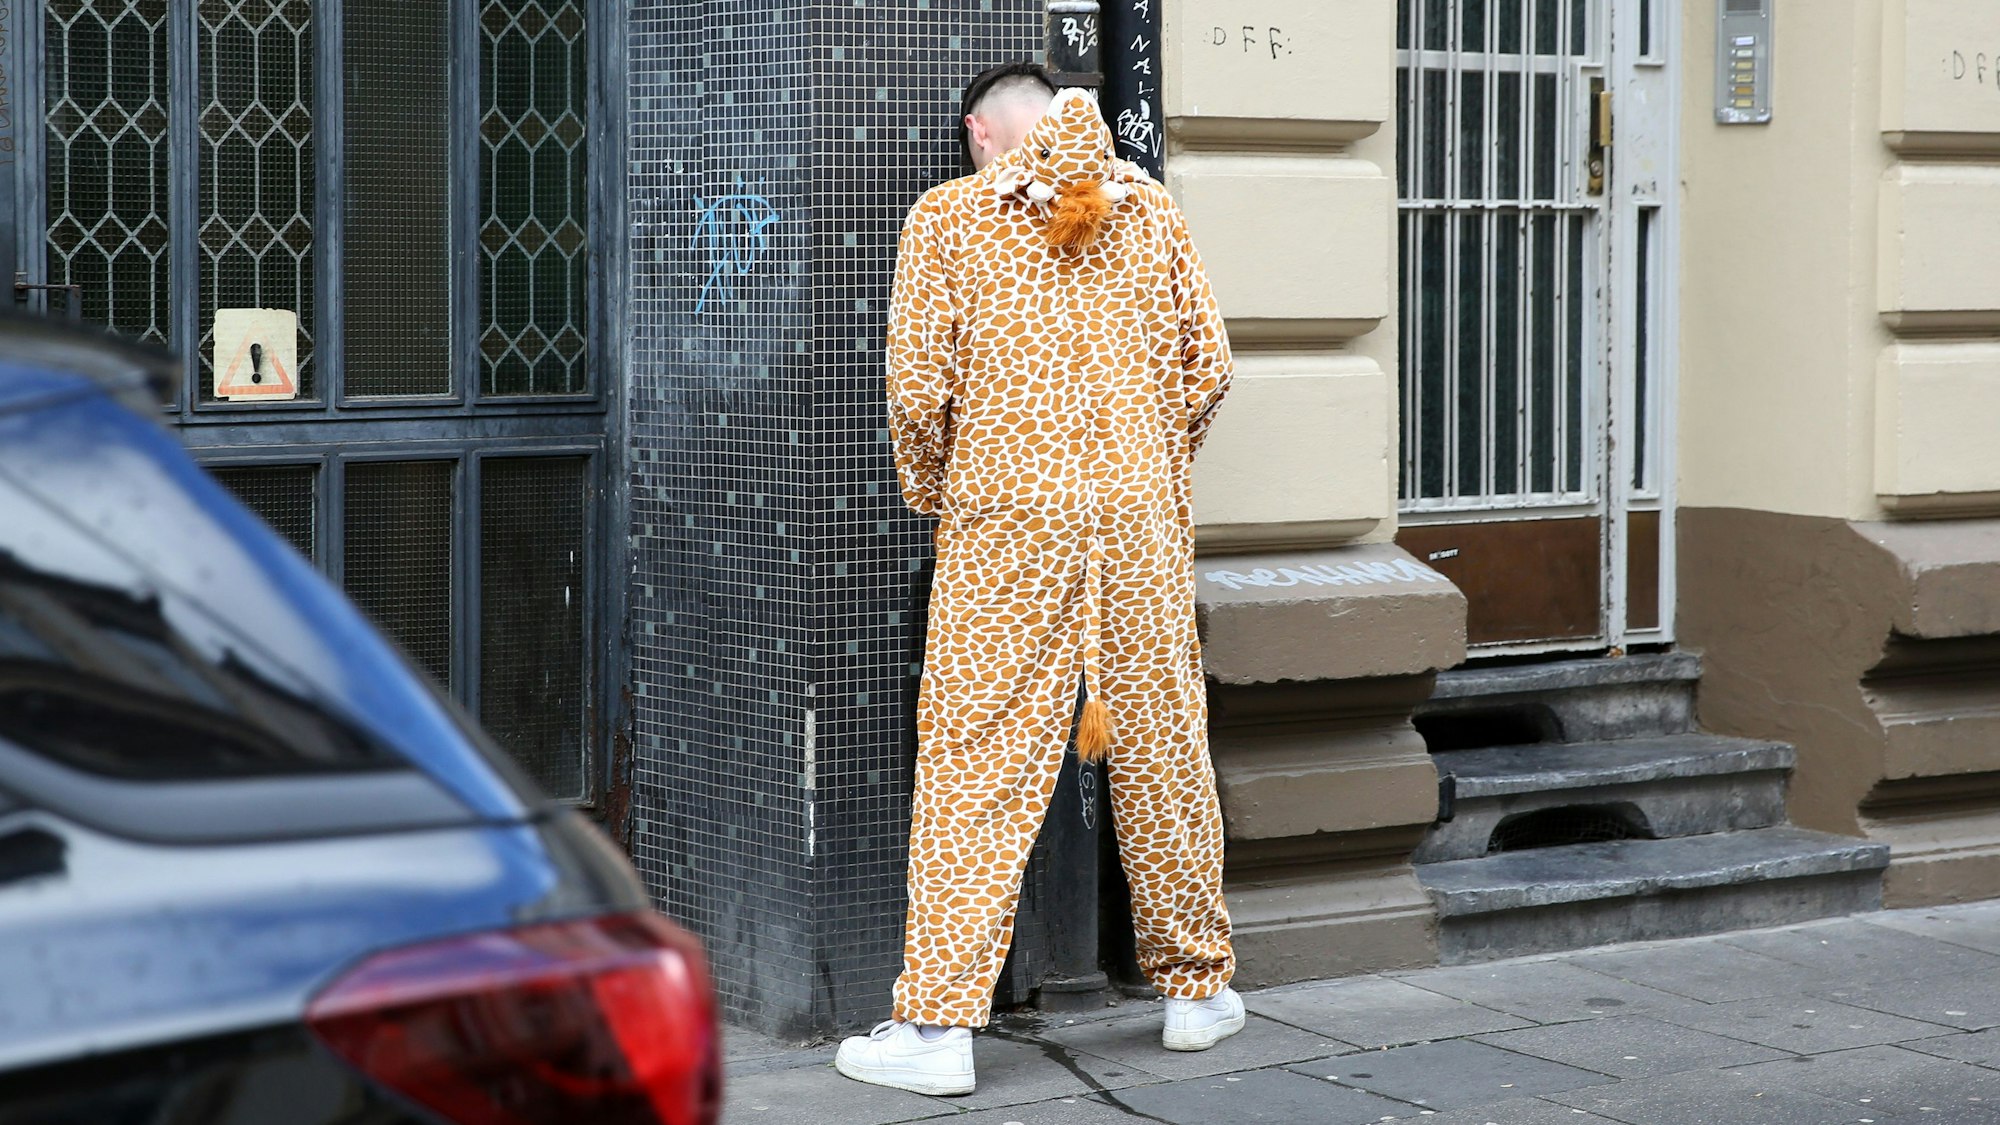 Ein Mann in einem Giraffenkostüm steht an einer Hauswand und pinkelt.